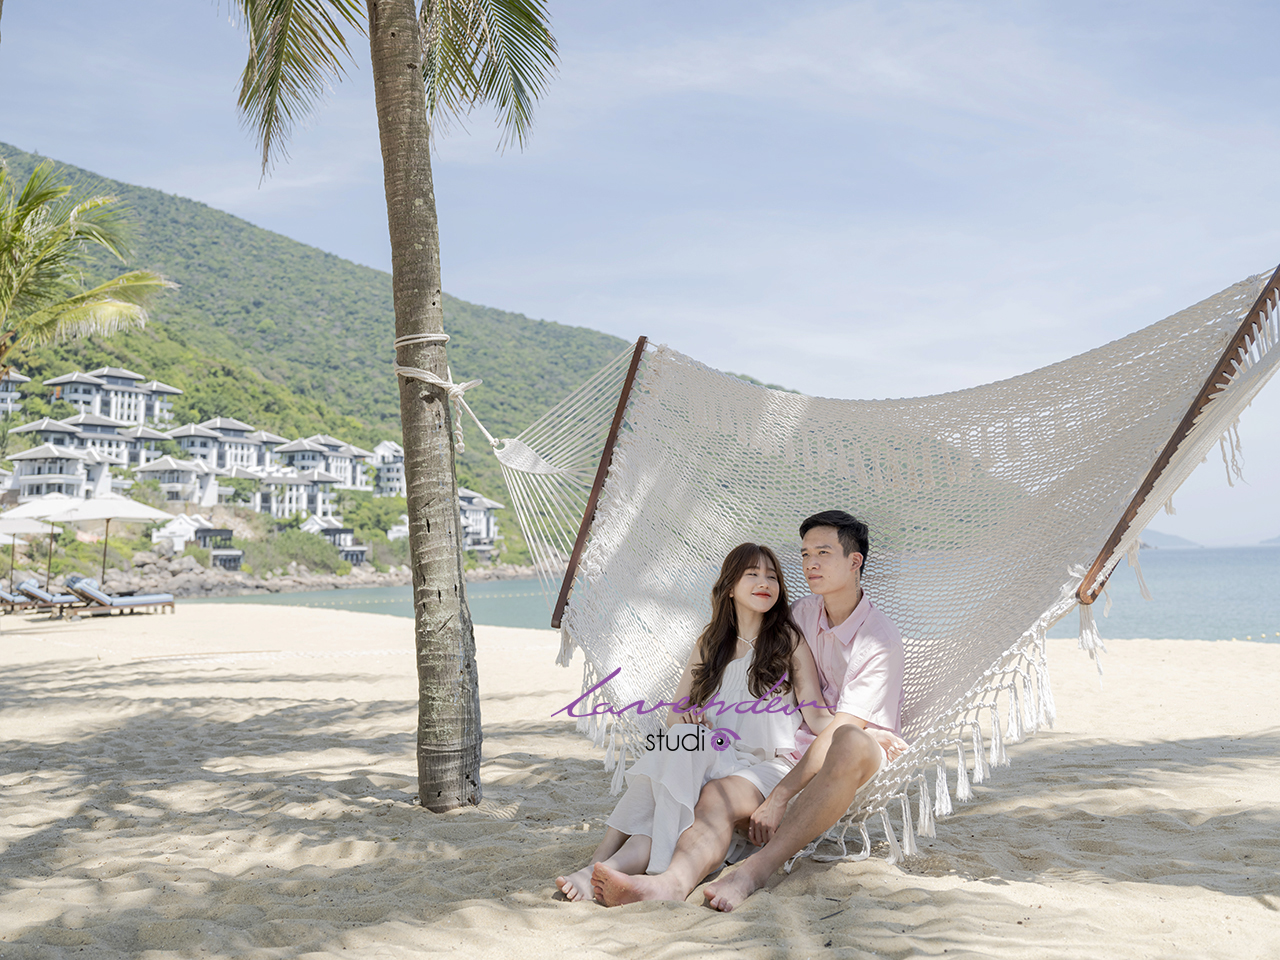 Giá thuê dịch vụ chụp ảnh couple du lịch biển Đà nẵng hiện nay